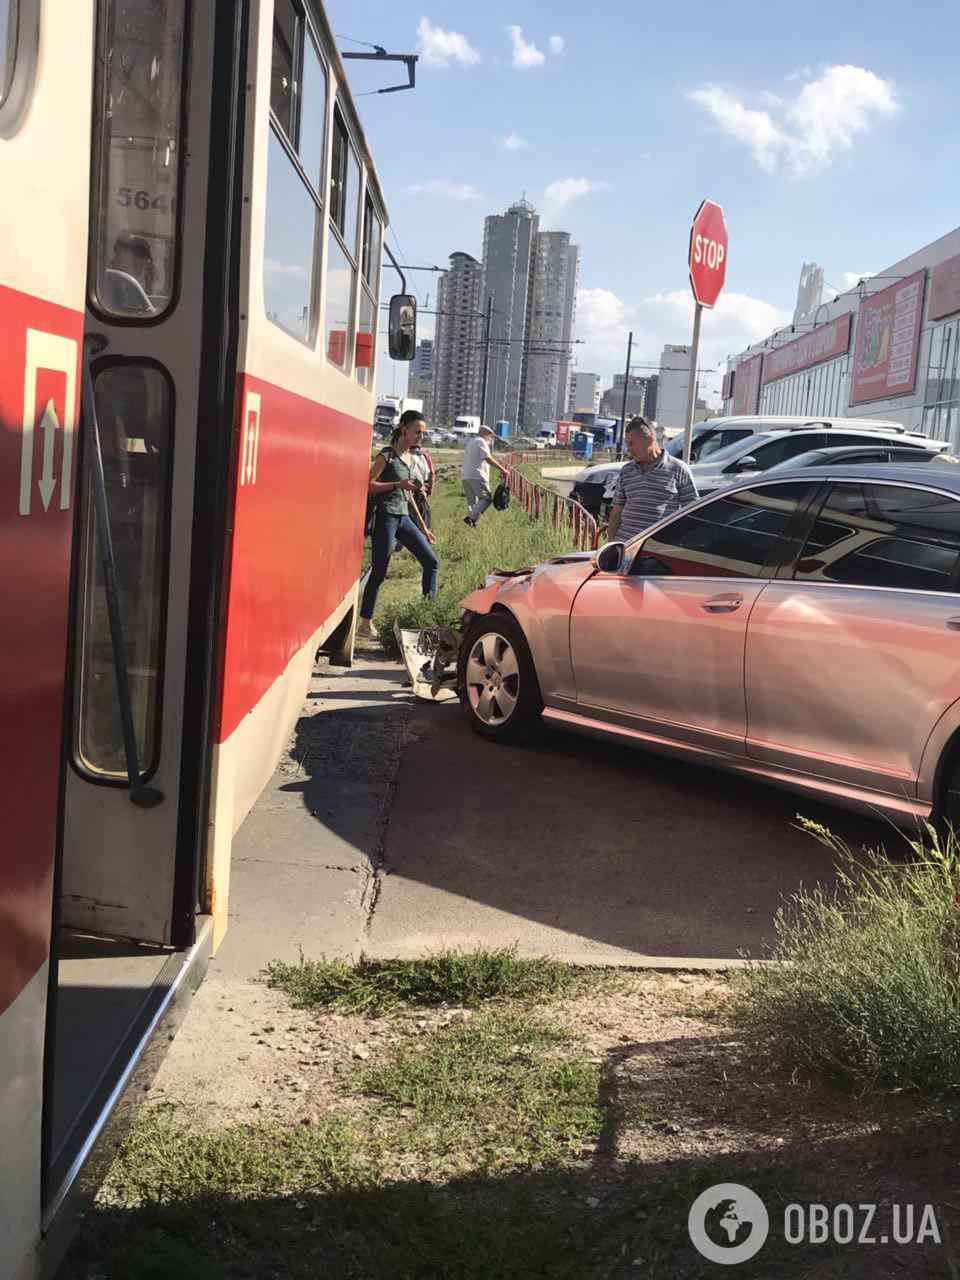 "Выскочили пулей!" В Киеве элитное авто влетело в трамвай с пассажирами. Эксклюзивные фото